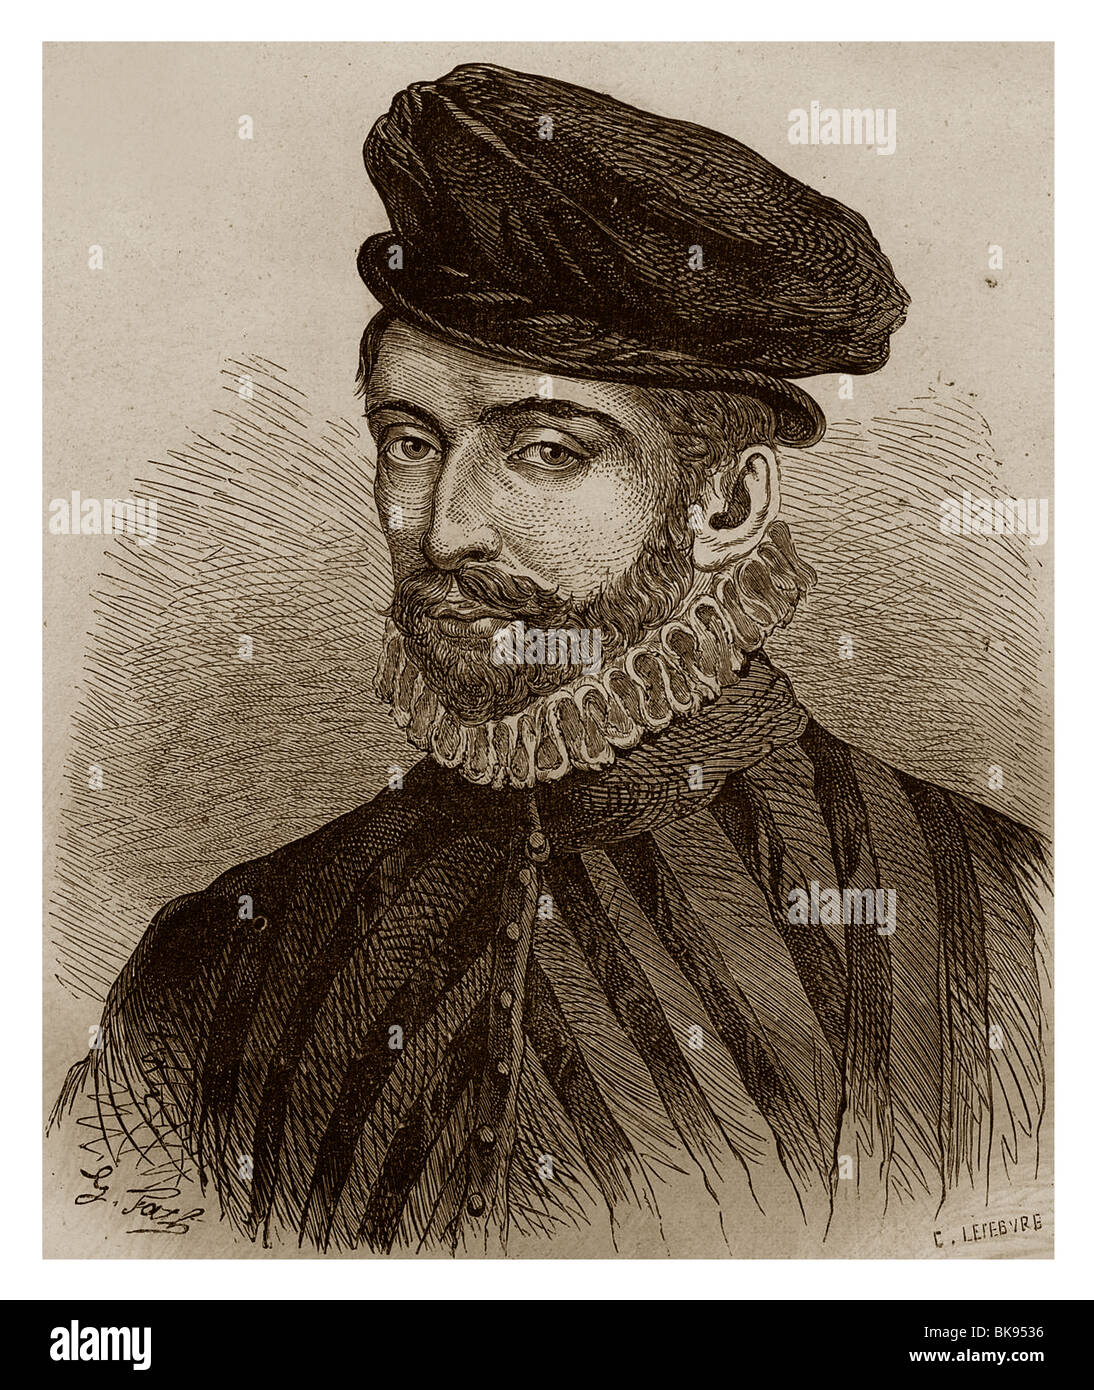 Nicolás IV de Neufville, Señor de Villeroy (1542-1617): Importante secretario de Estado durante el reinado de Enrique IV de Francia. Foto de stock